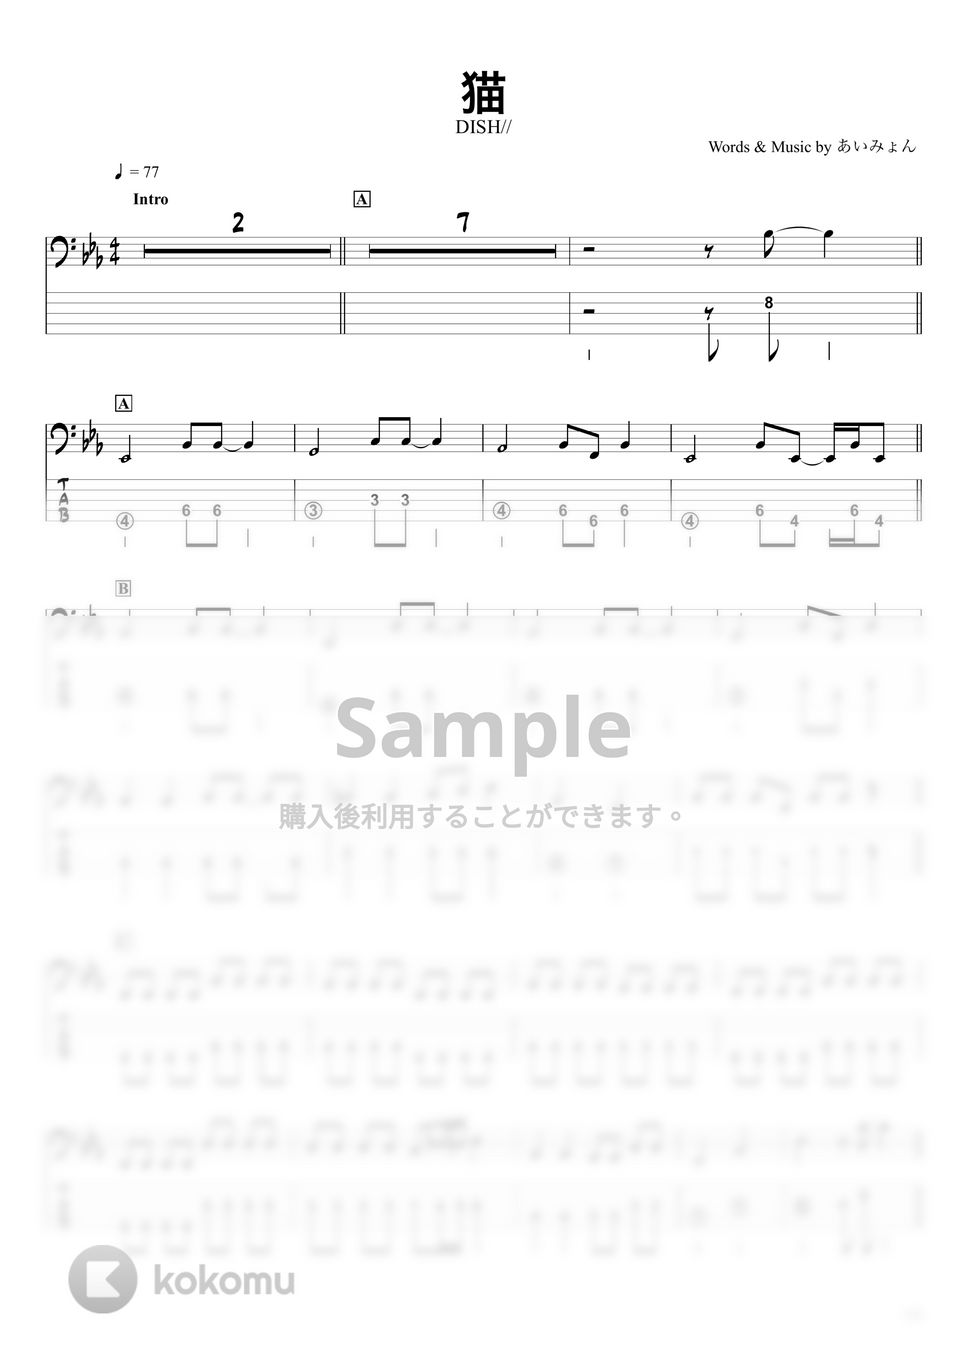 DISH// - 【猫】DISH//『ベースTAB譜』☆5弦ベース対応 by swbass